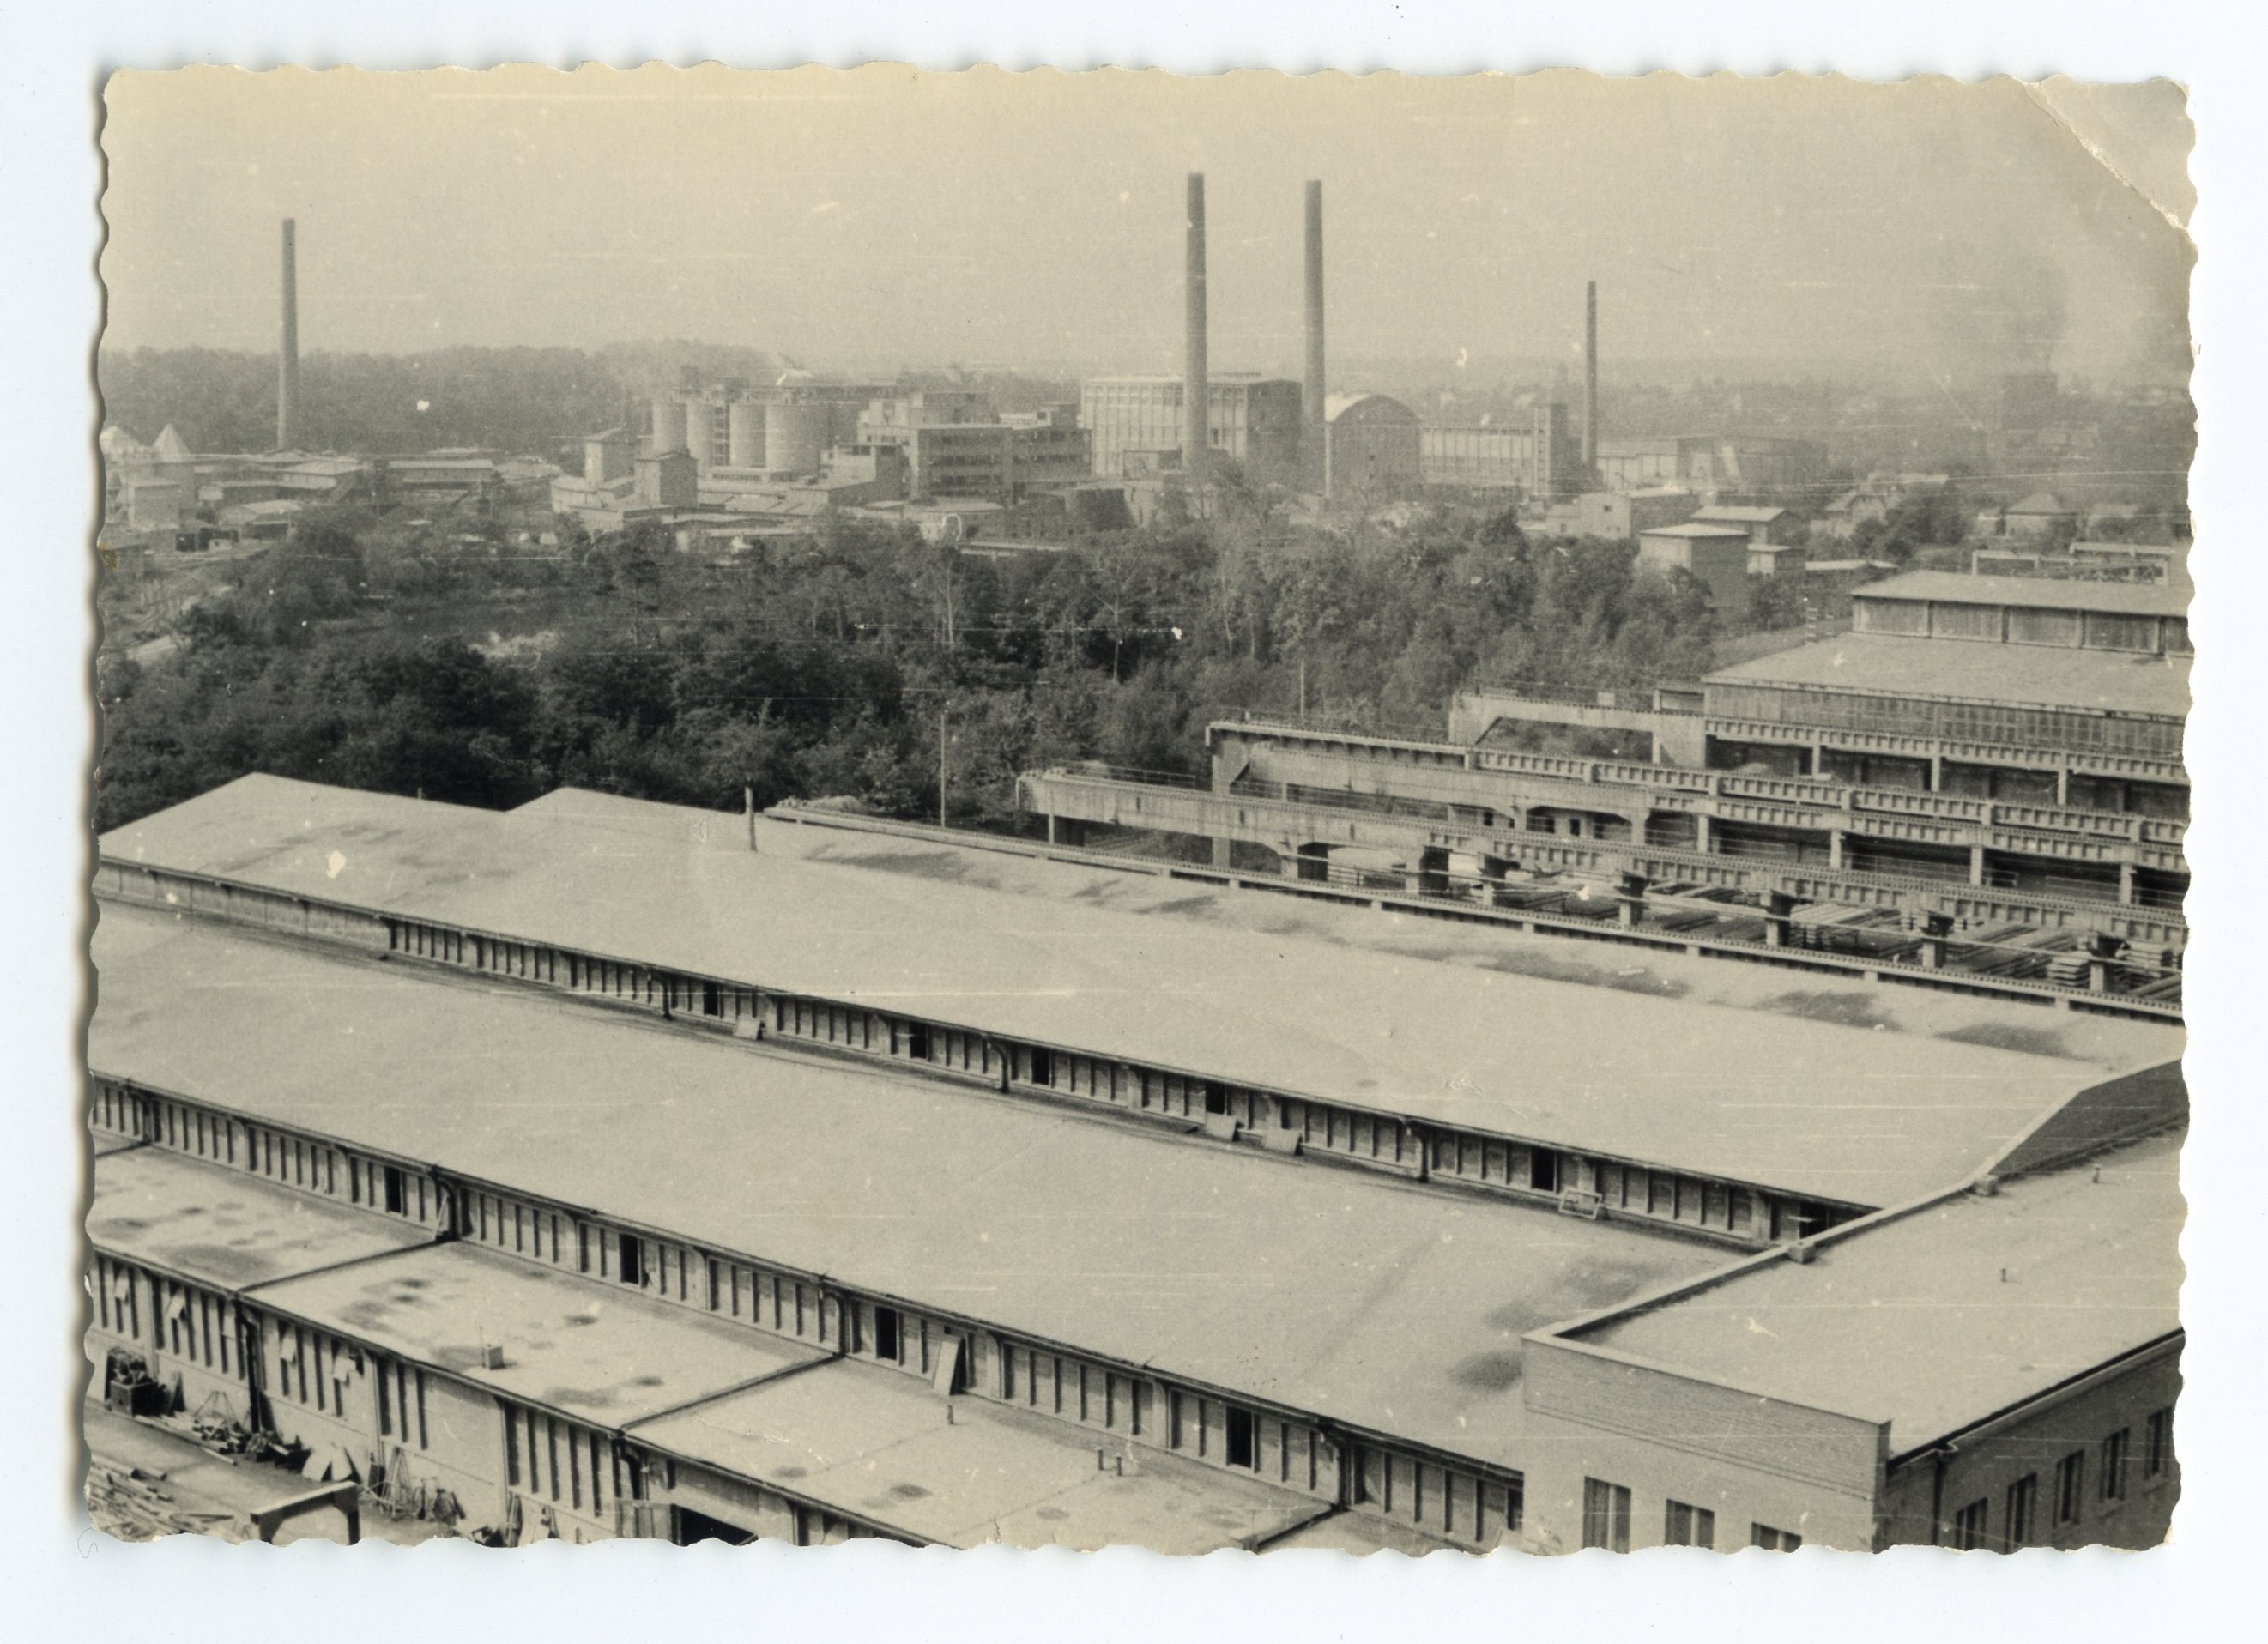 Betonwerk mit Blick auf die Industrie in Rüdersdorf (Museumspark Rüdersdorf CC BY-NC-SA)